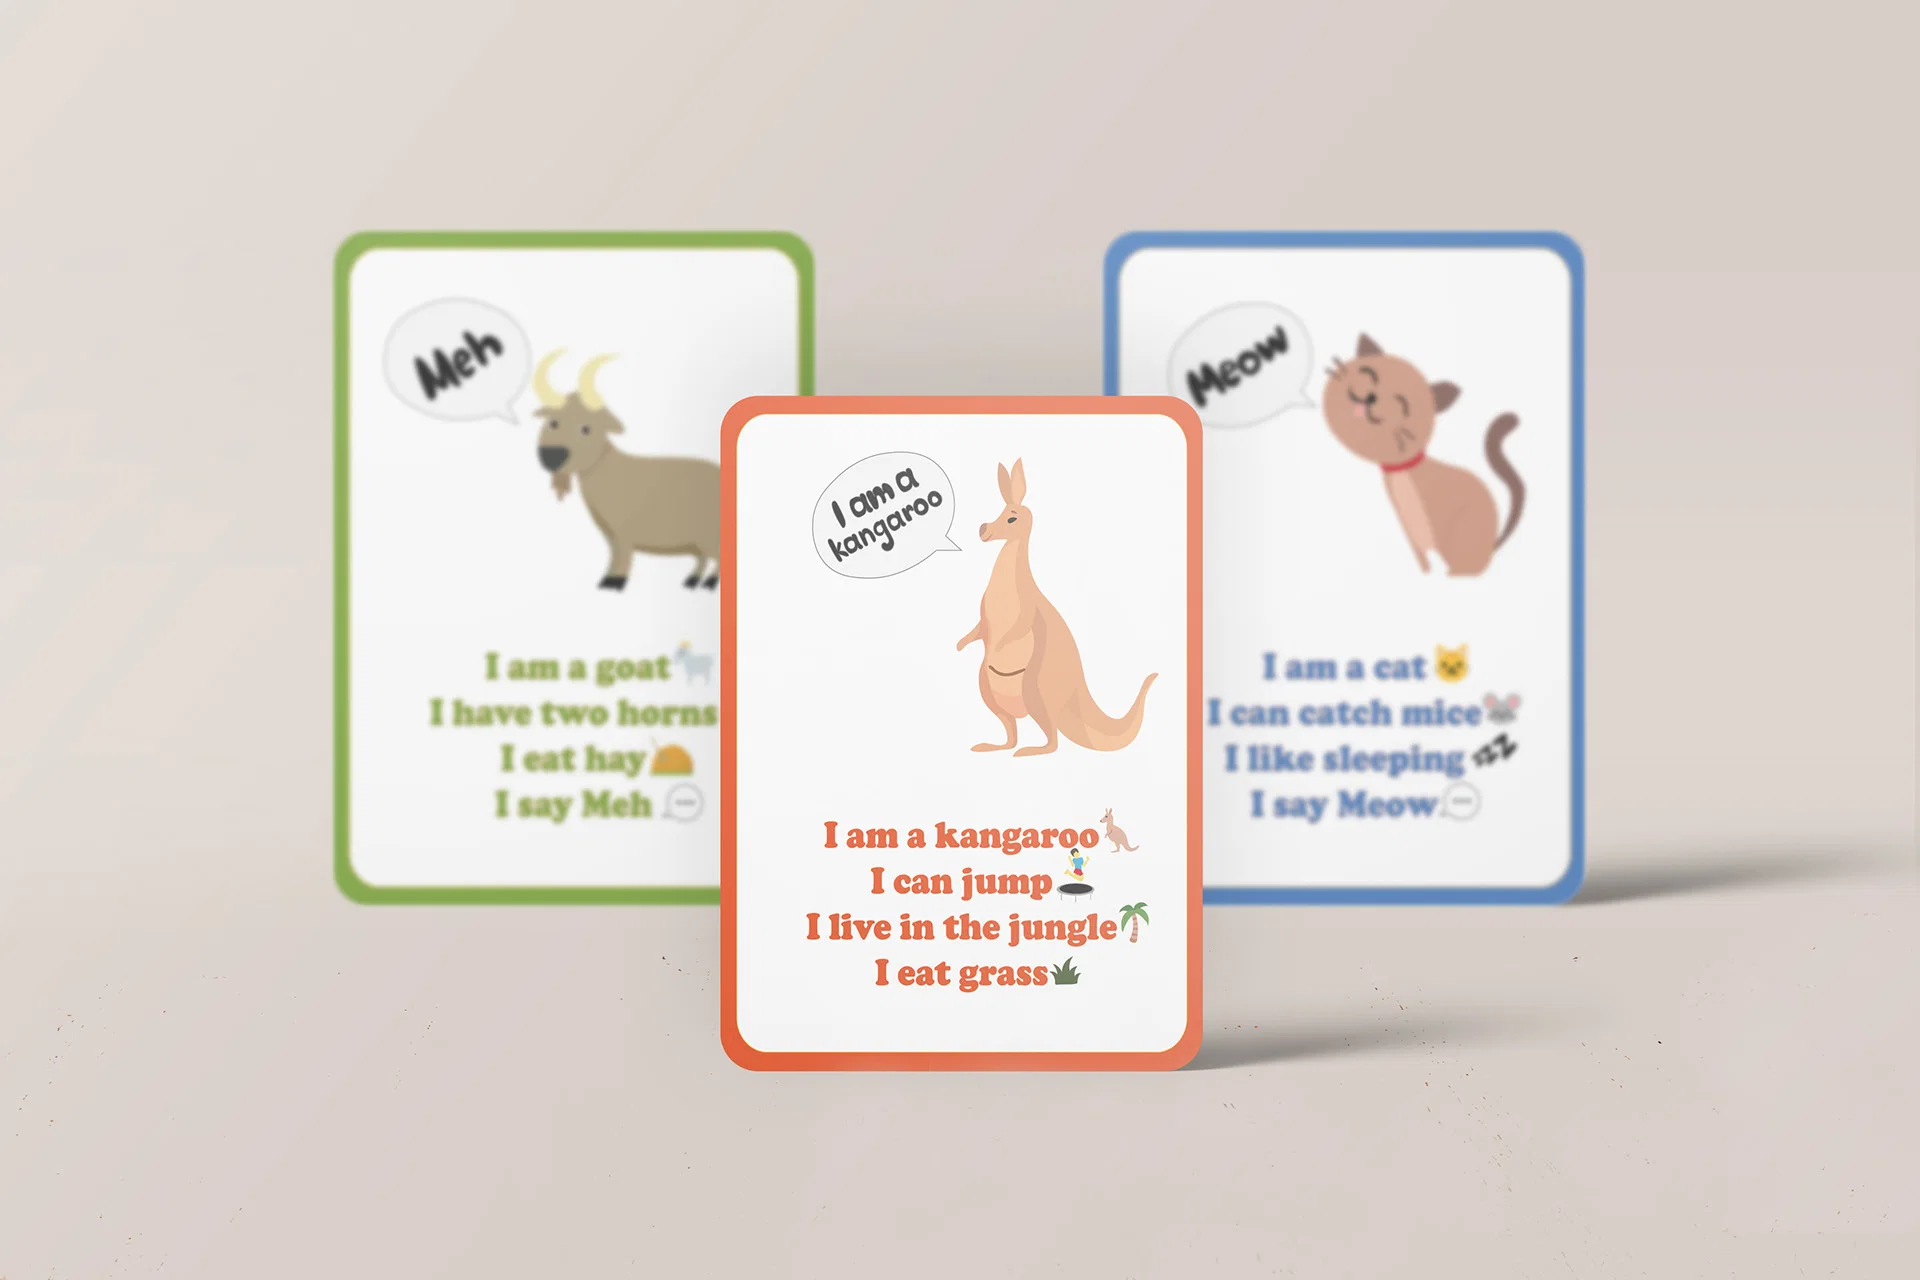 Fabricant OEM Custom Label les cartes Flash partie Paper Board jeux pour enfants